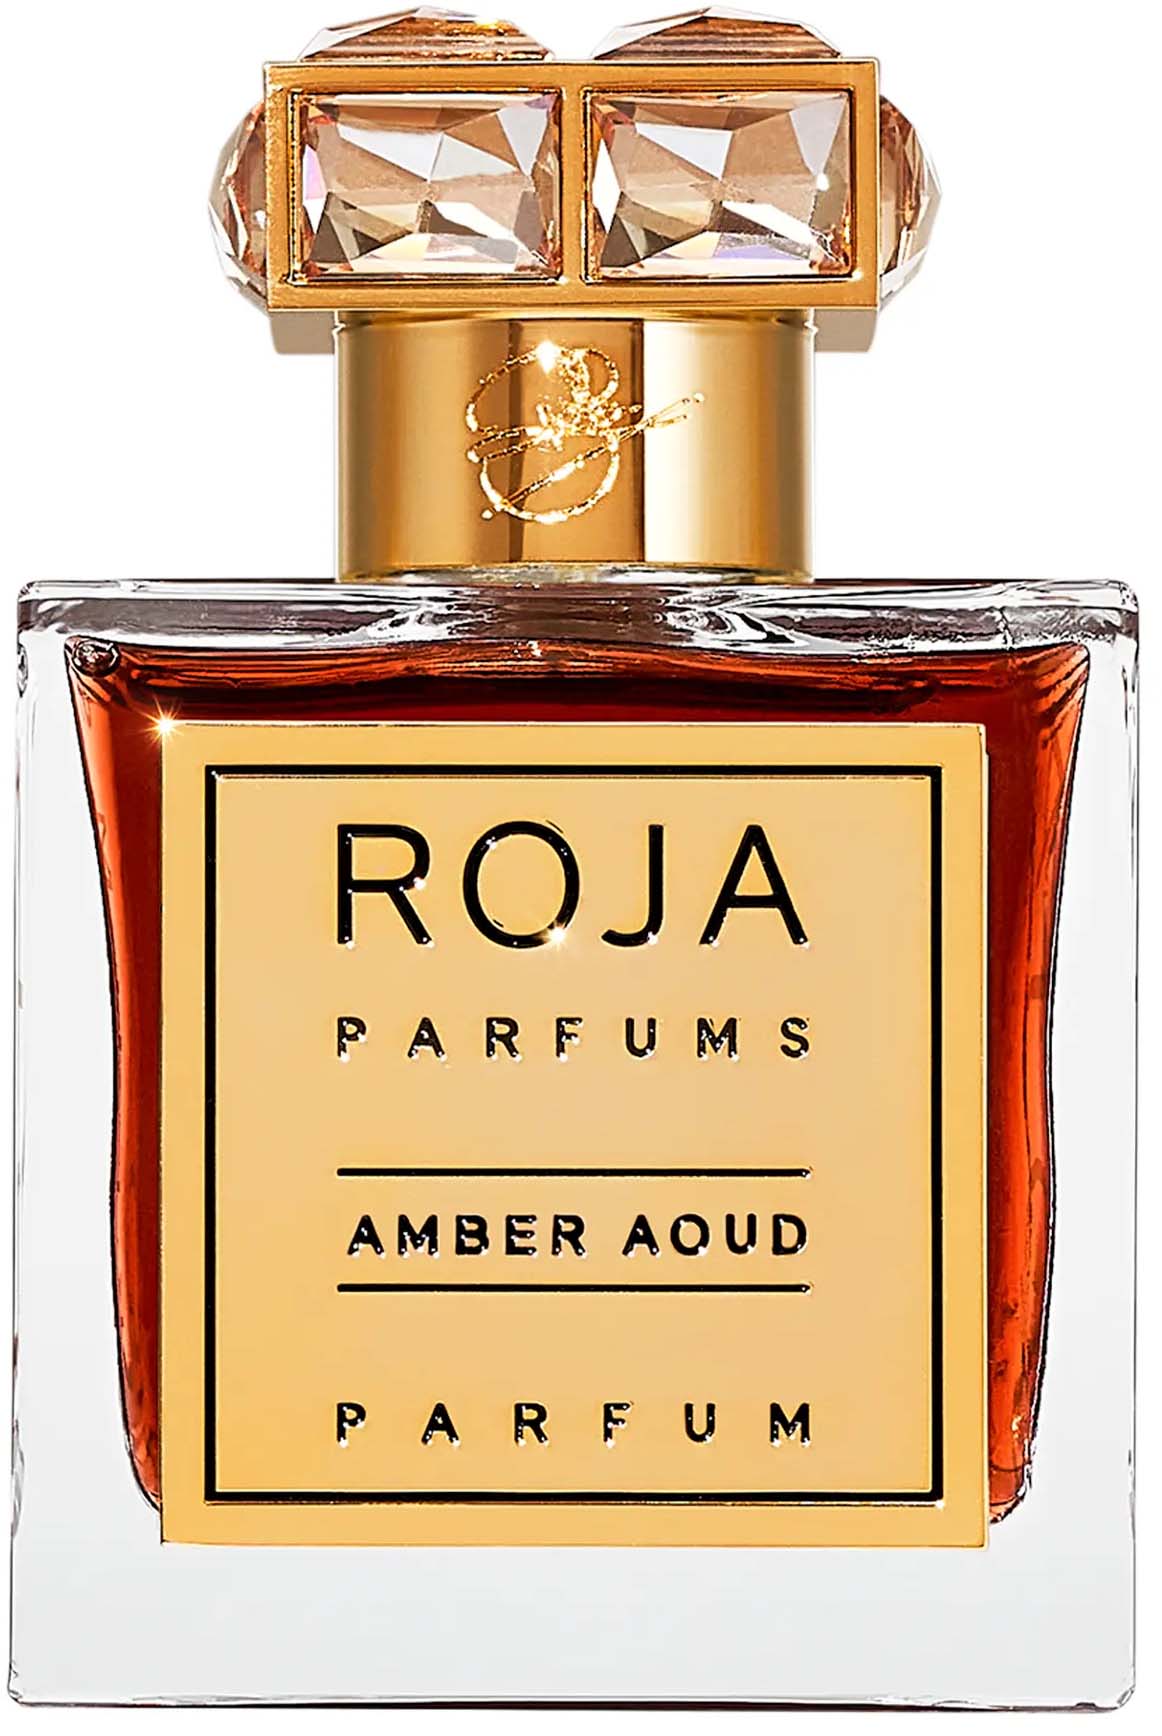 Roja Parfums Amber Aoud Parfum Edp